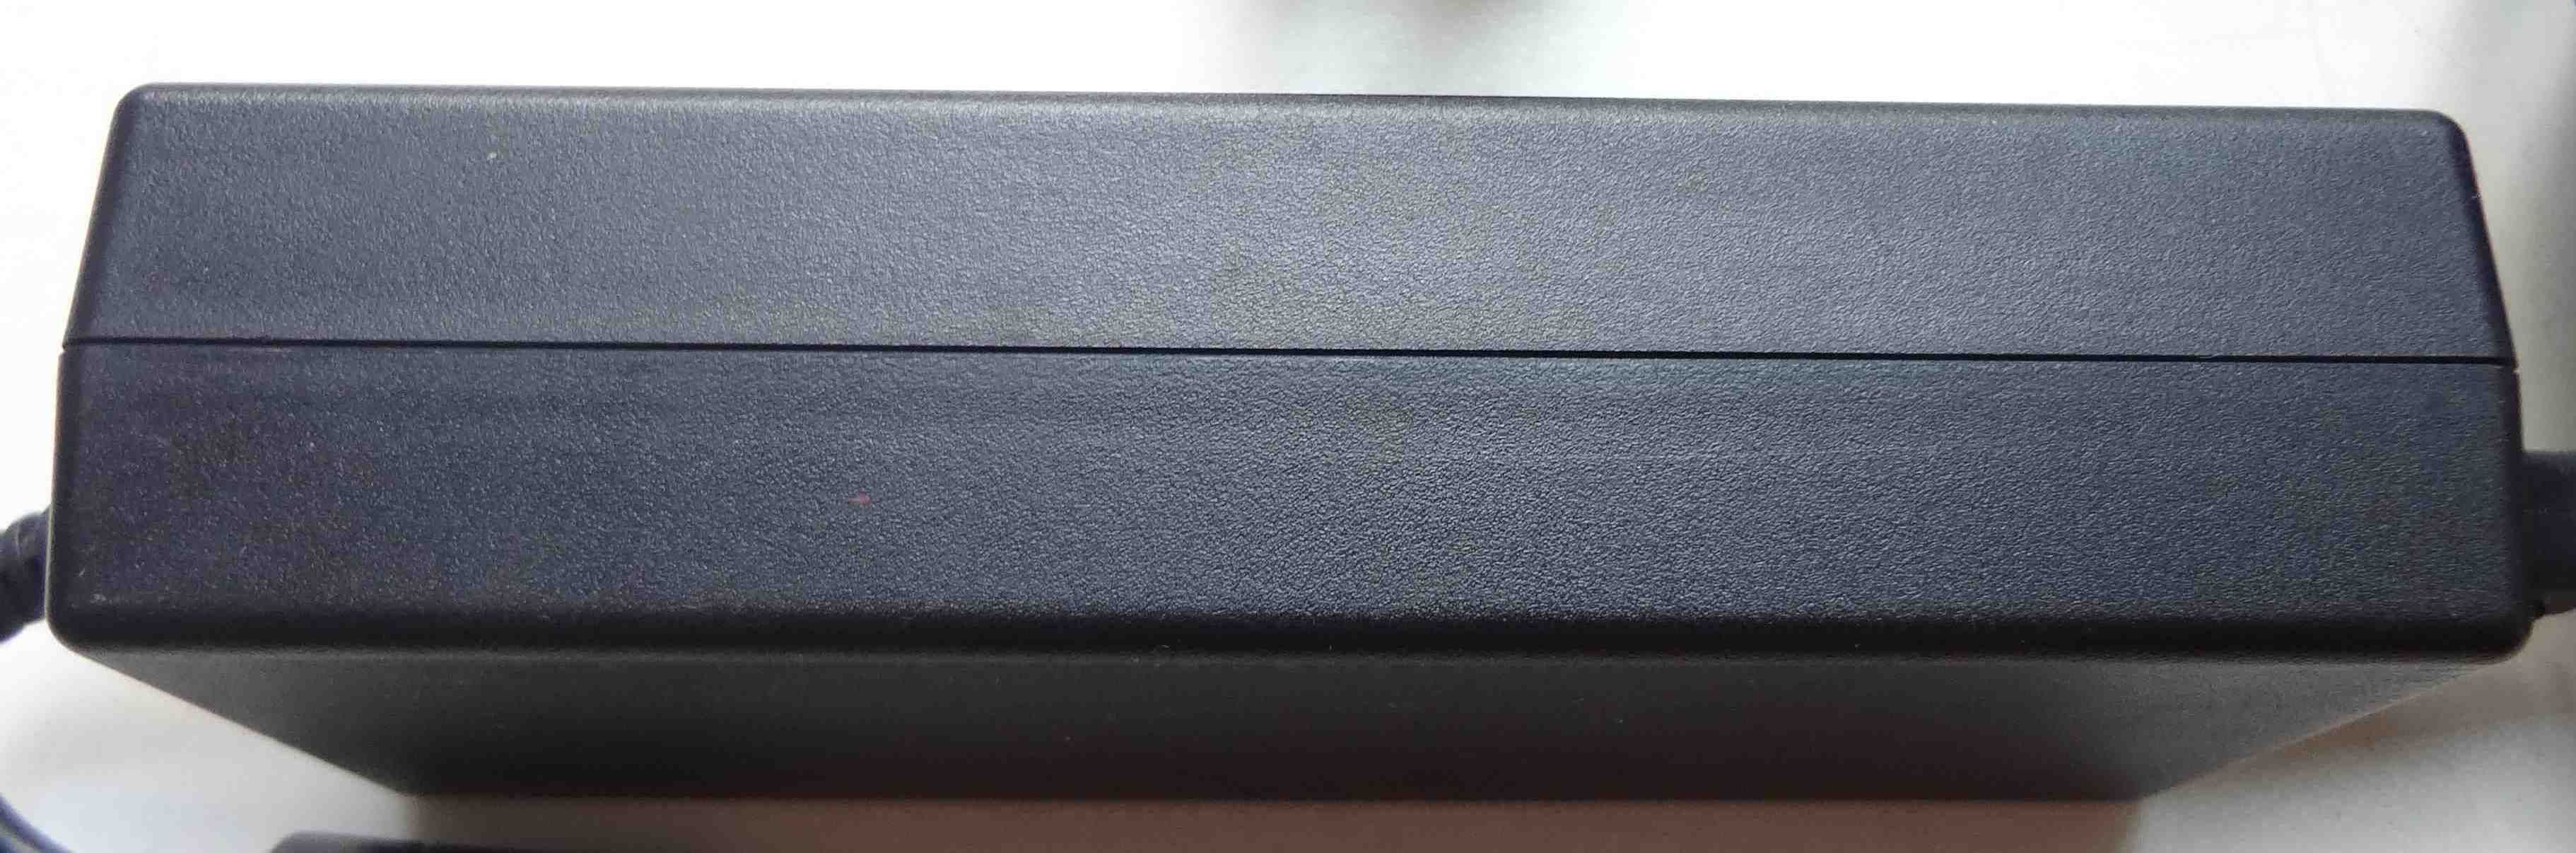 Блок питания для ноутбука HP 18.5V 6.5A 120W PPP016C зарядка